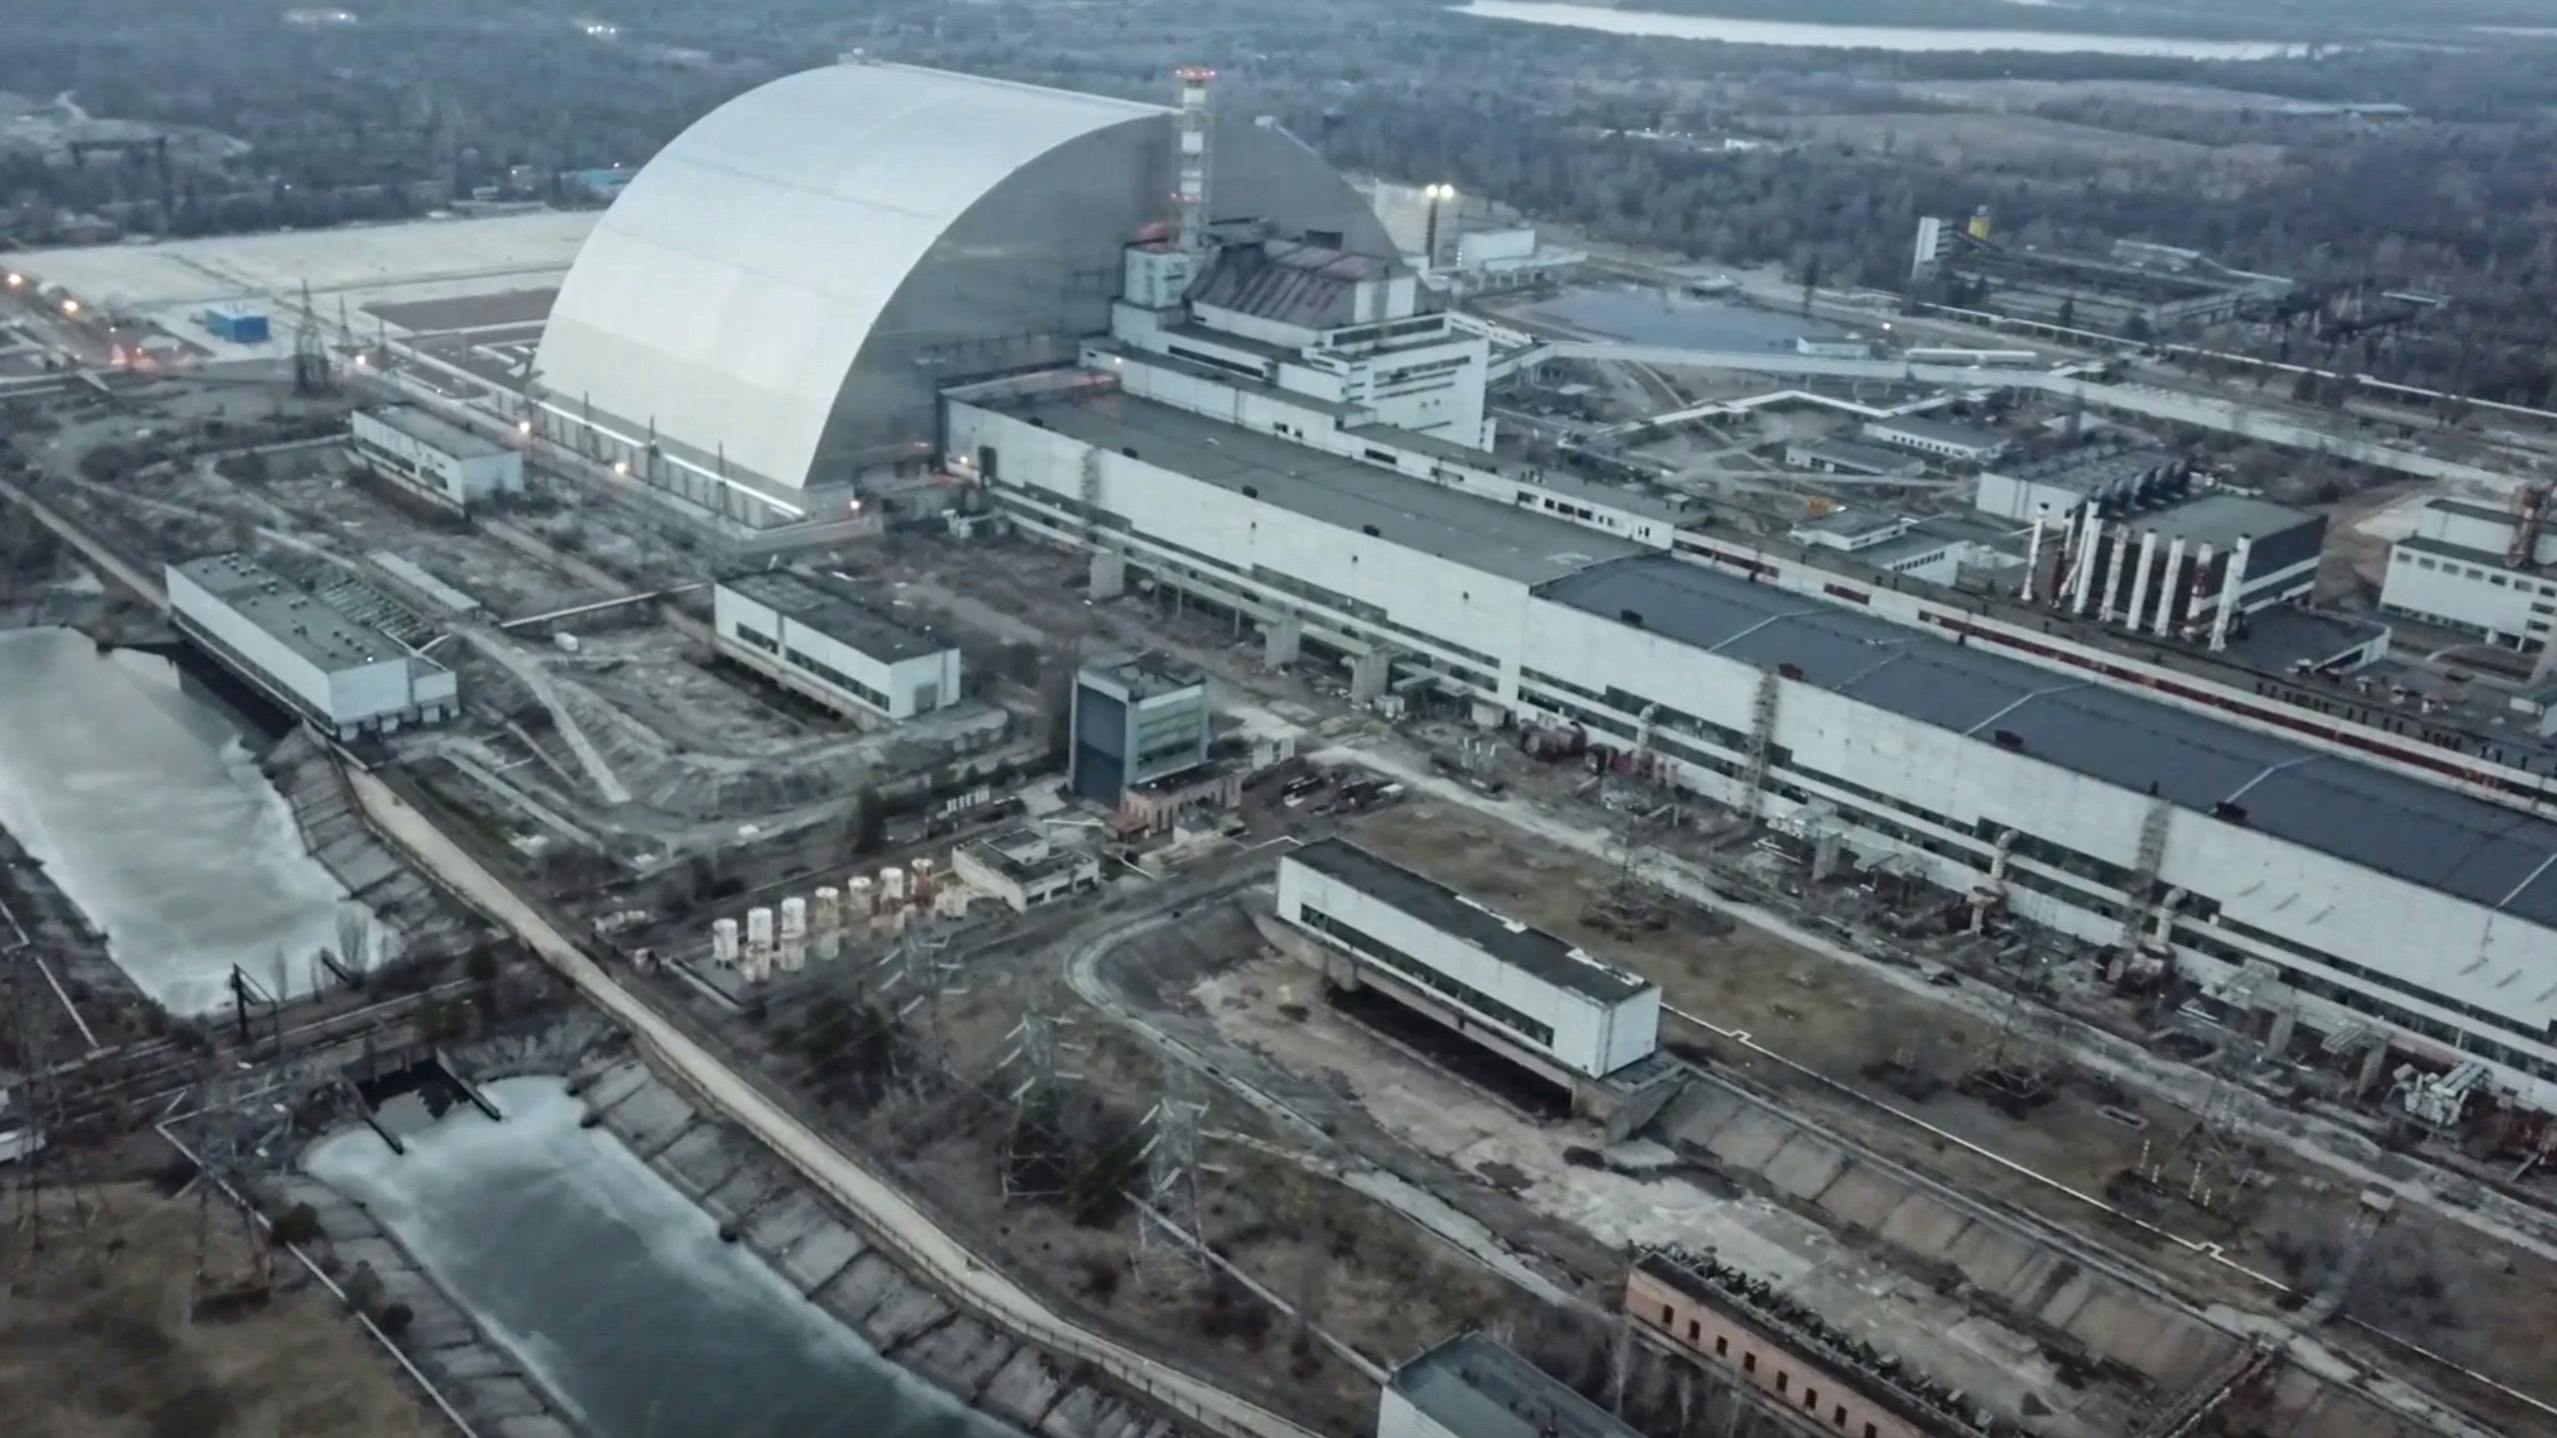 De Tsjernobyl kerncentrale in Pripyat 